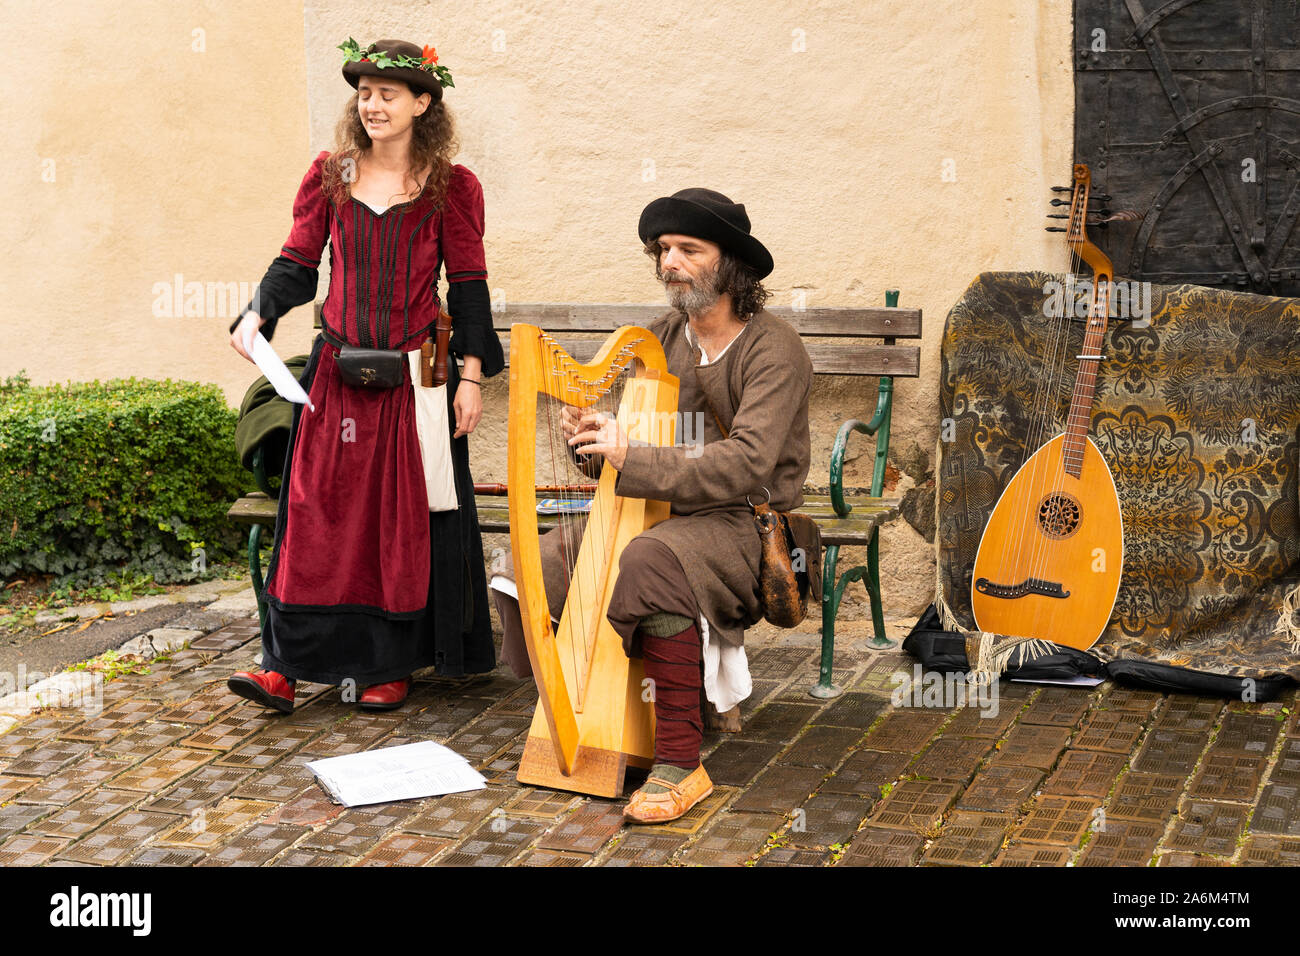 Un homme et une femme en tenue médiévale jouant de la harpe et le chant à l'Eggenburg populaires Festival médiéval, le plus grand événement médiéval Autriche Banque D'Images